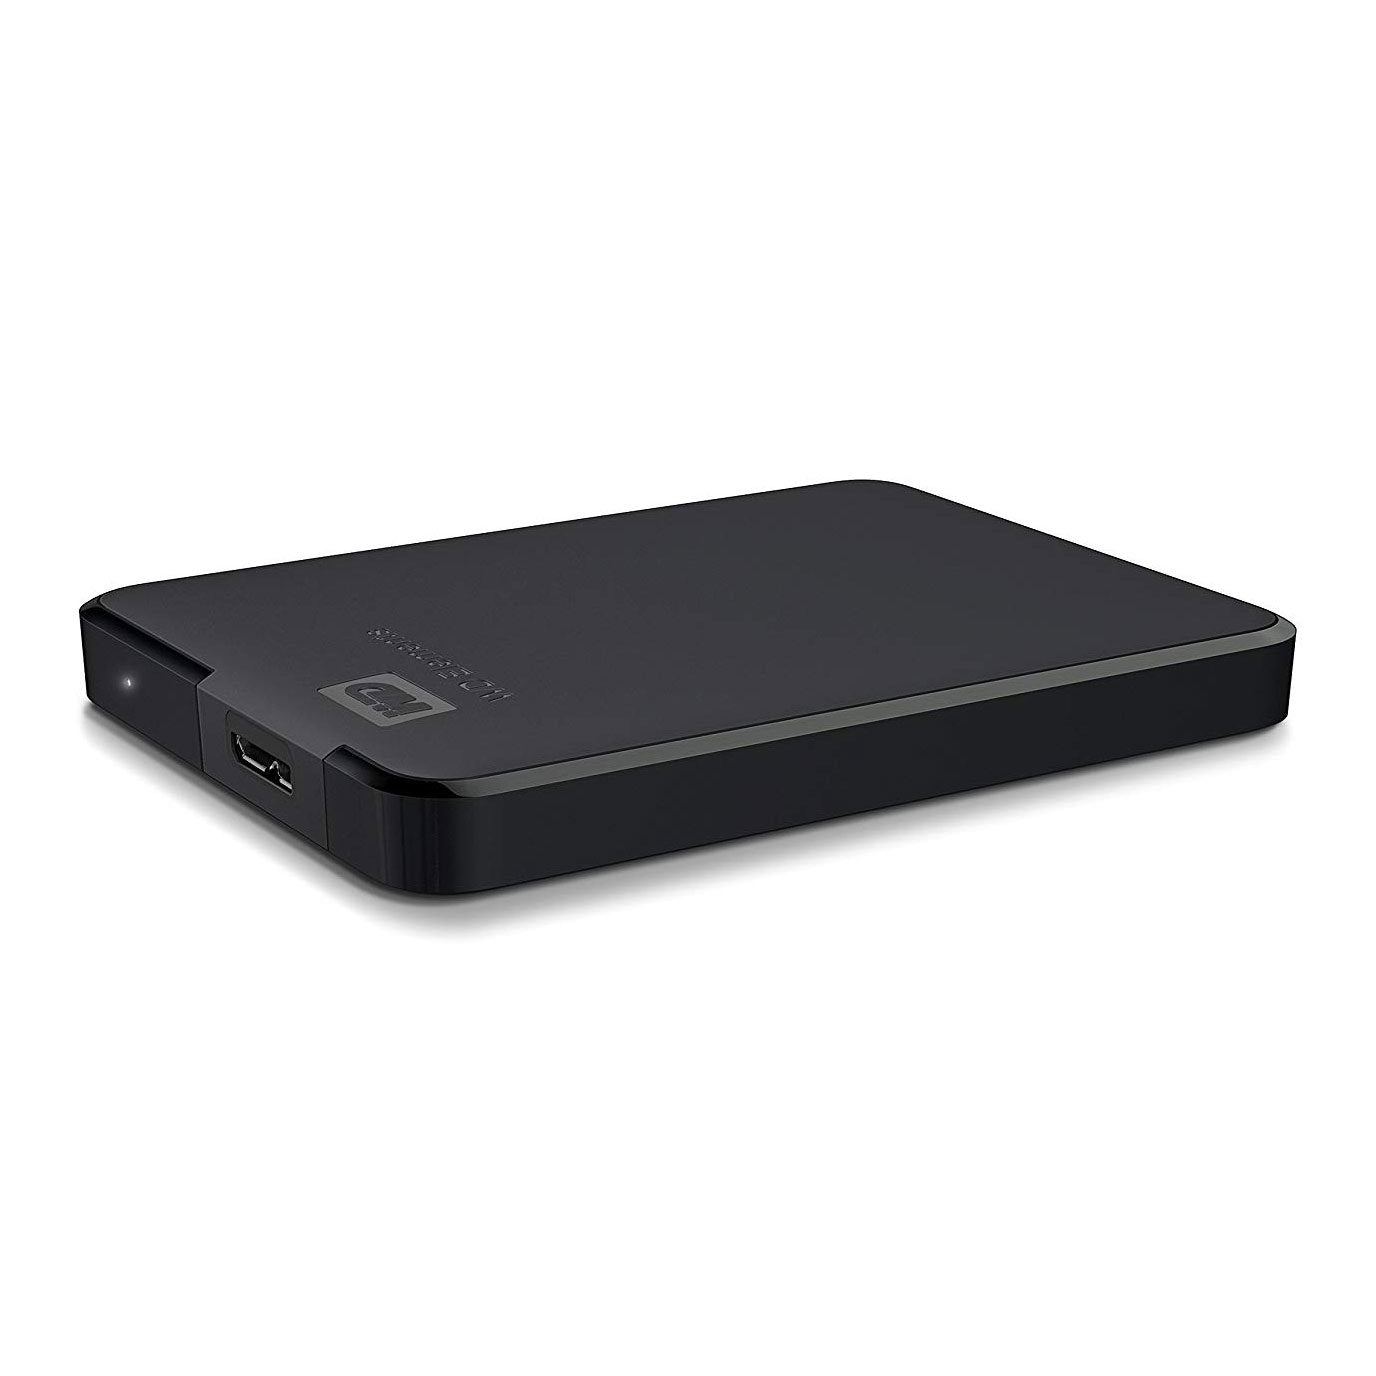 WD Elements 1TB Portable External USB 3.0 Hard Drive Black